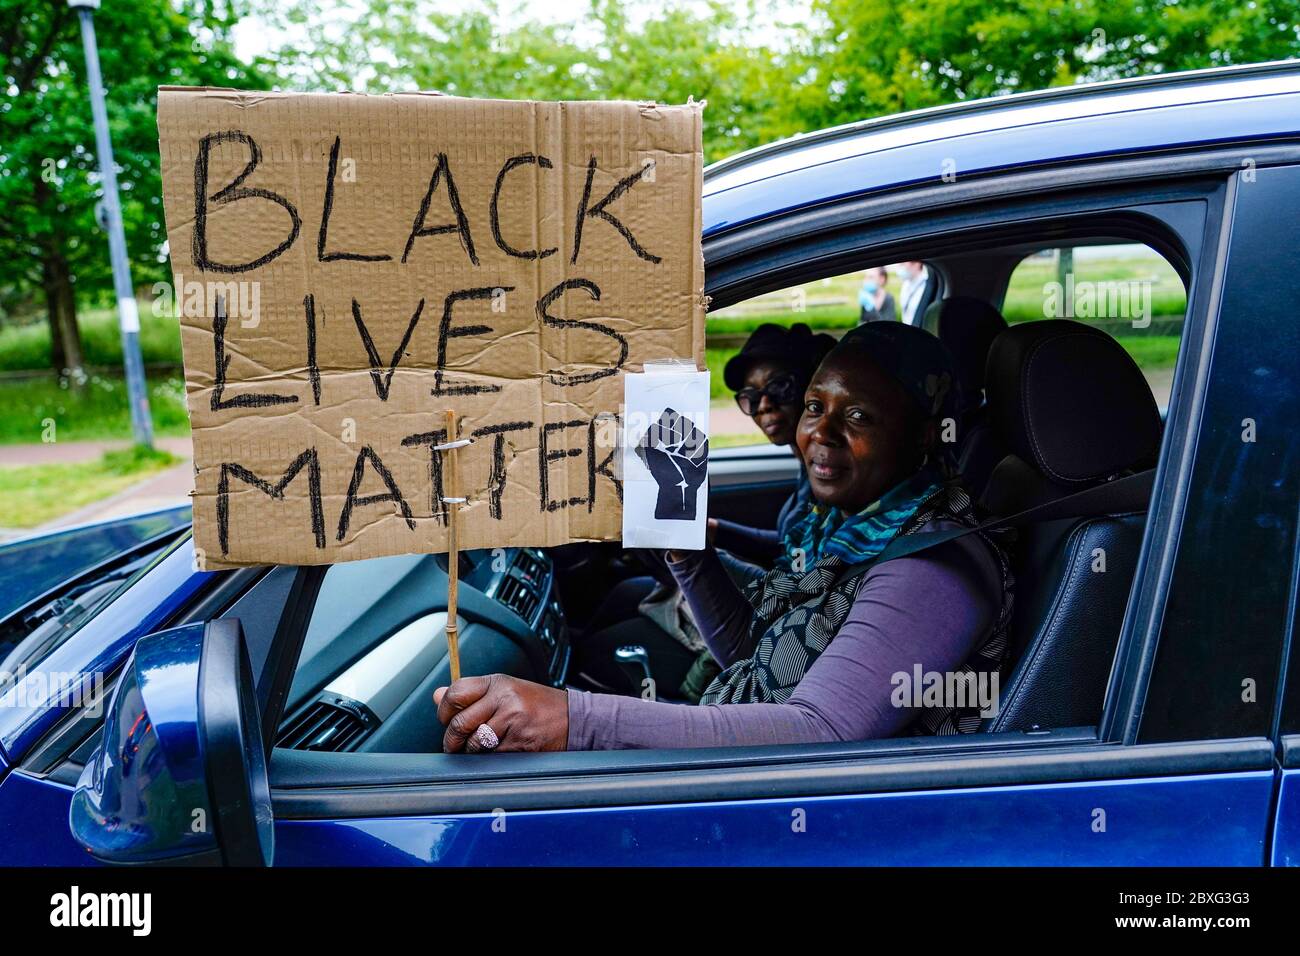 Edimbourg, Ecosse, Royaume-Uni. 7 juin 2020. Black Lives Matter manifestation au parc Holyrood à Édimbourg. Les conducteurs ont montré leur soutien dans un convoi de voitures privées. Iain Masterton/Alay Live News Banque D'Images